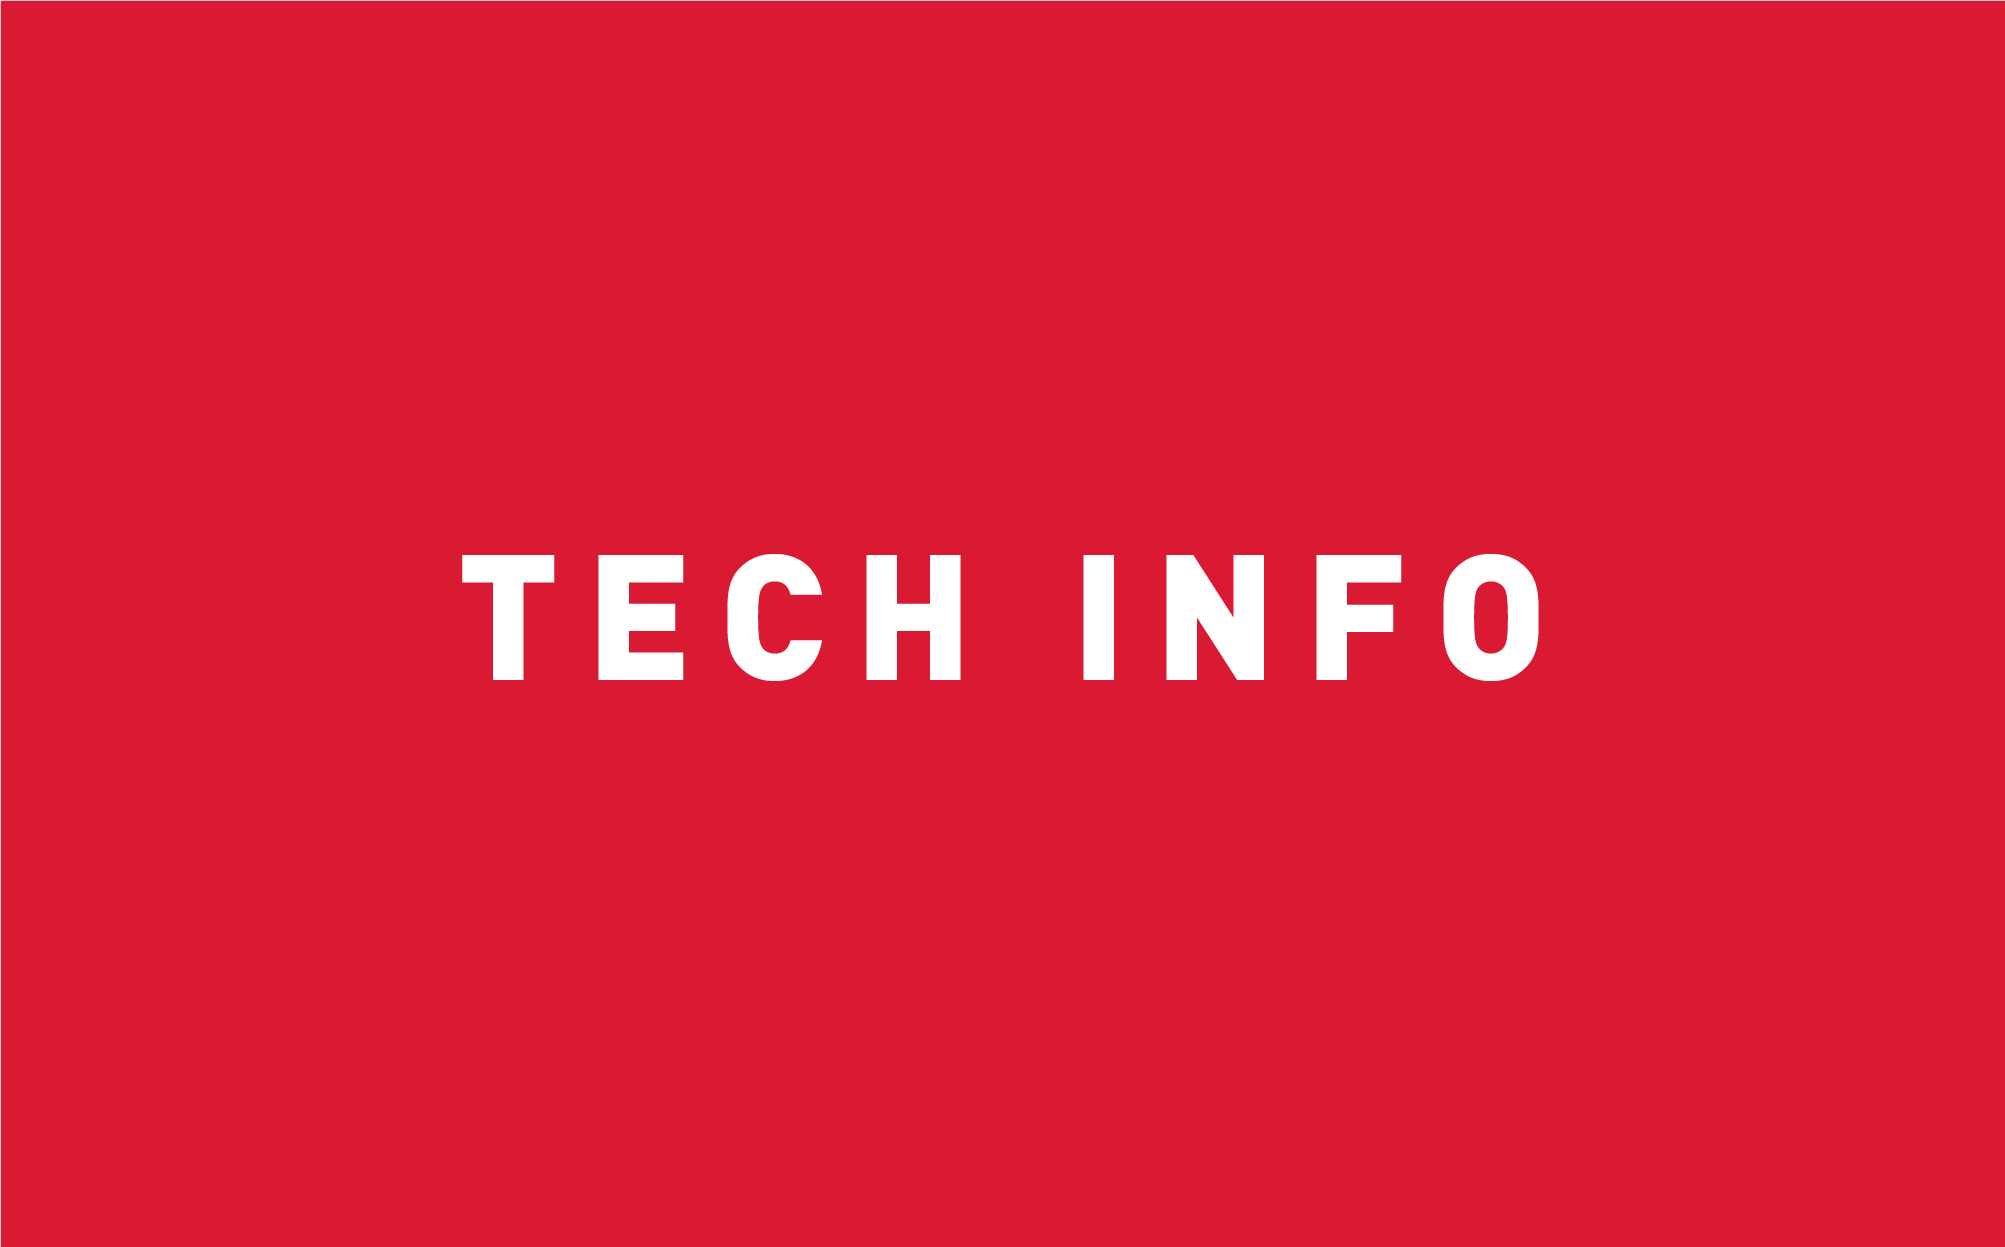 Intex Tech Info